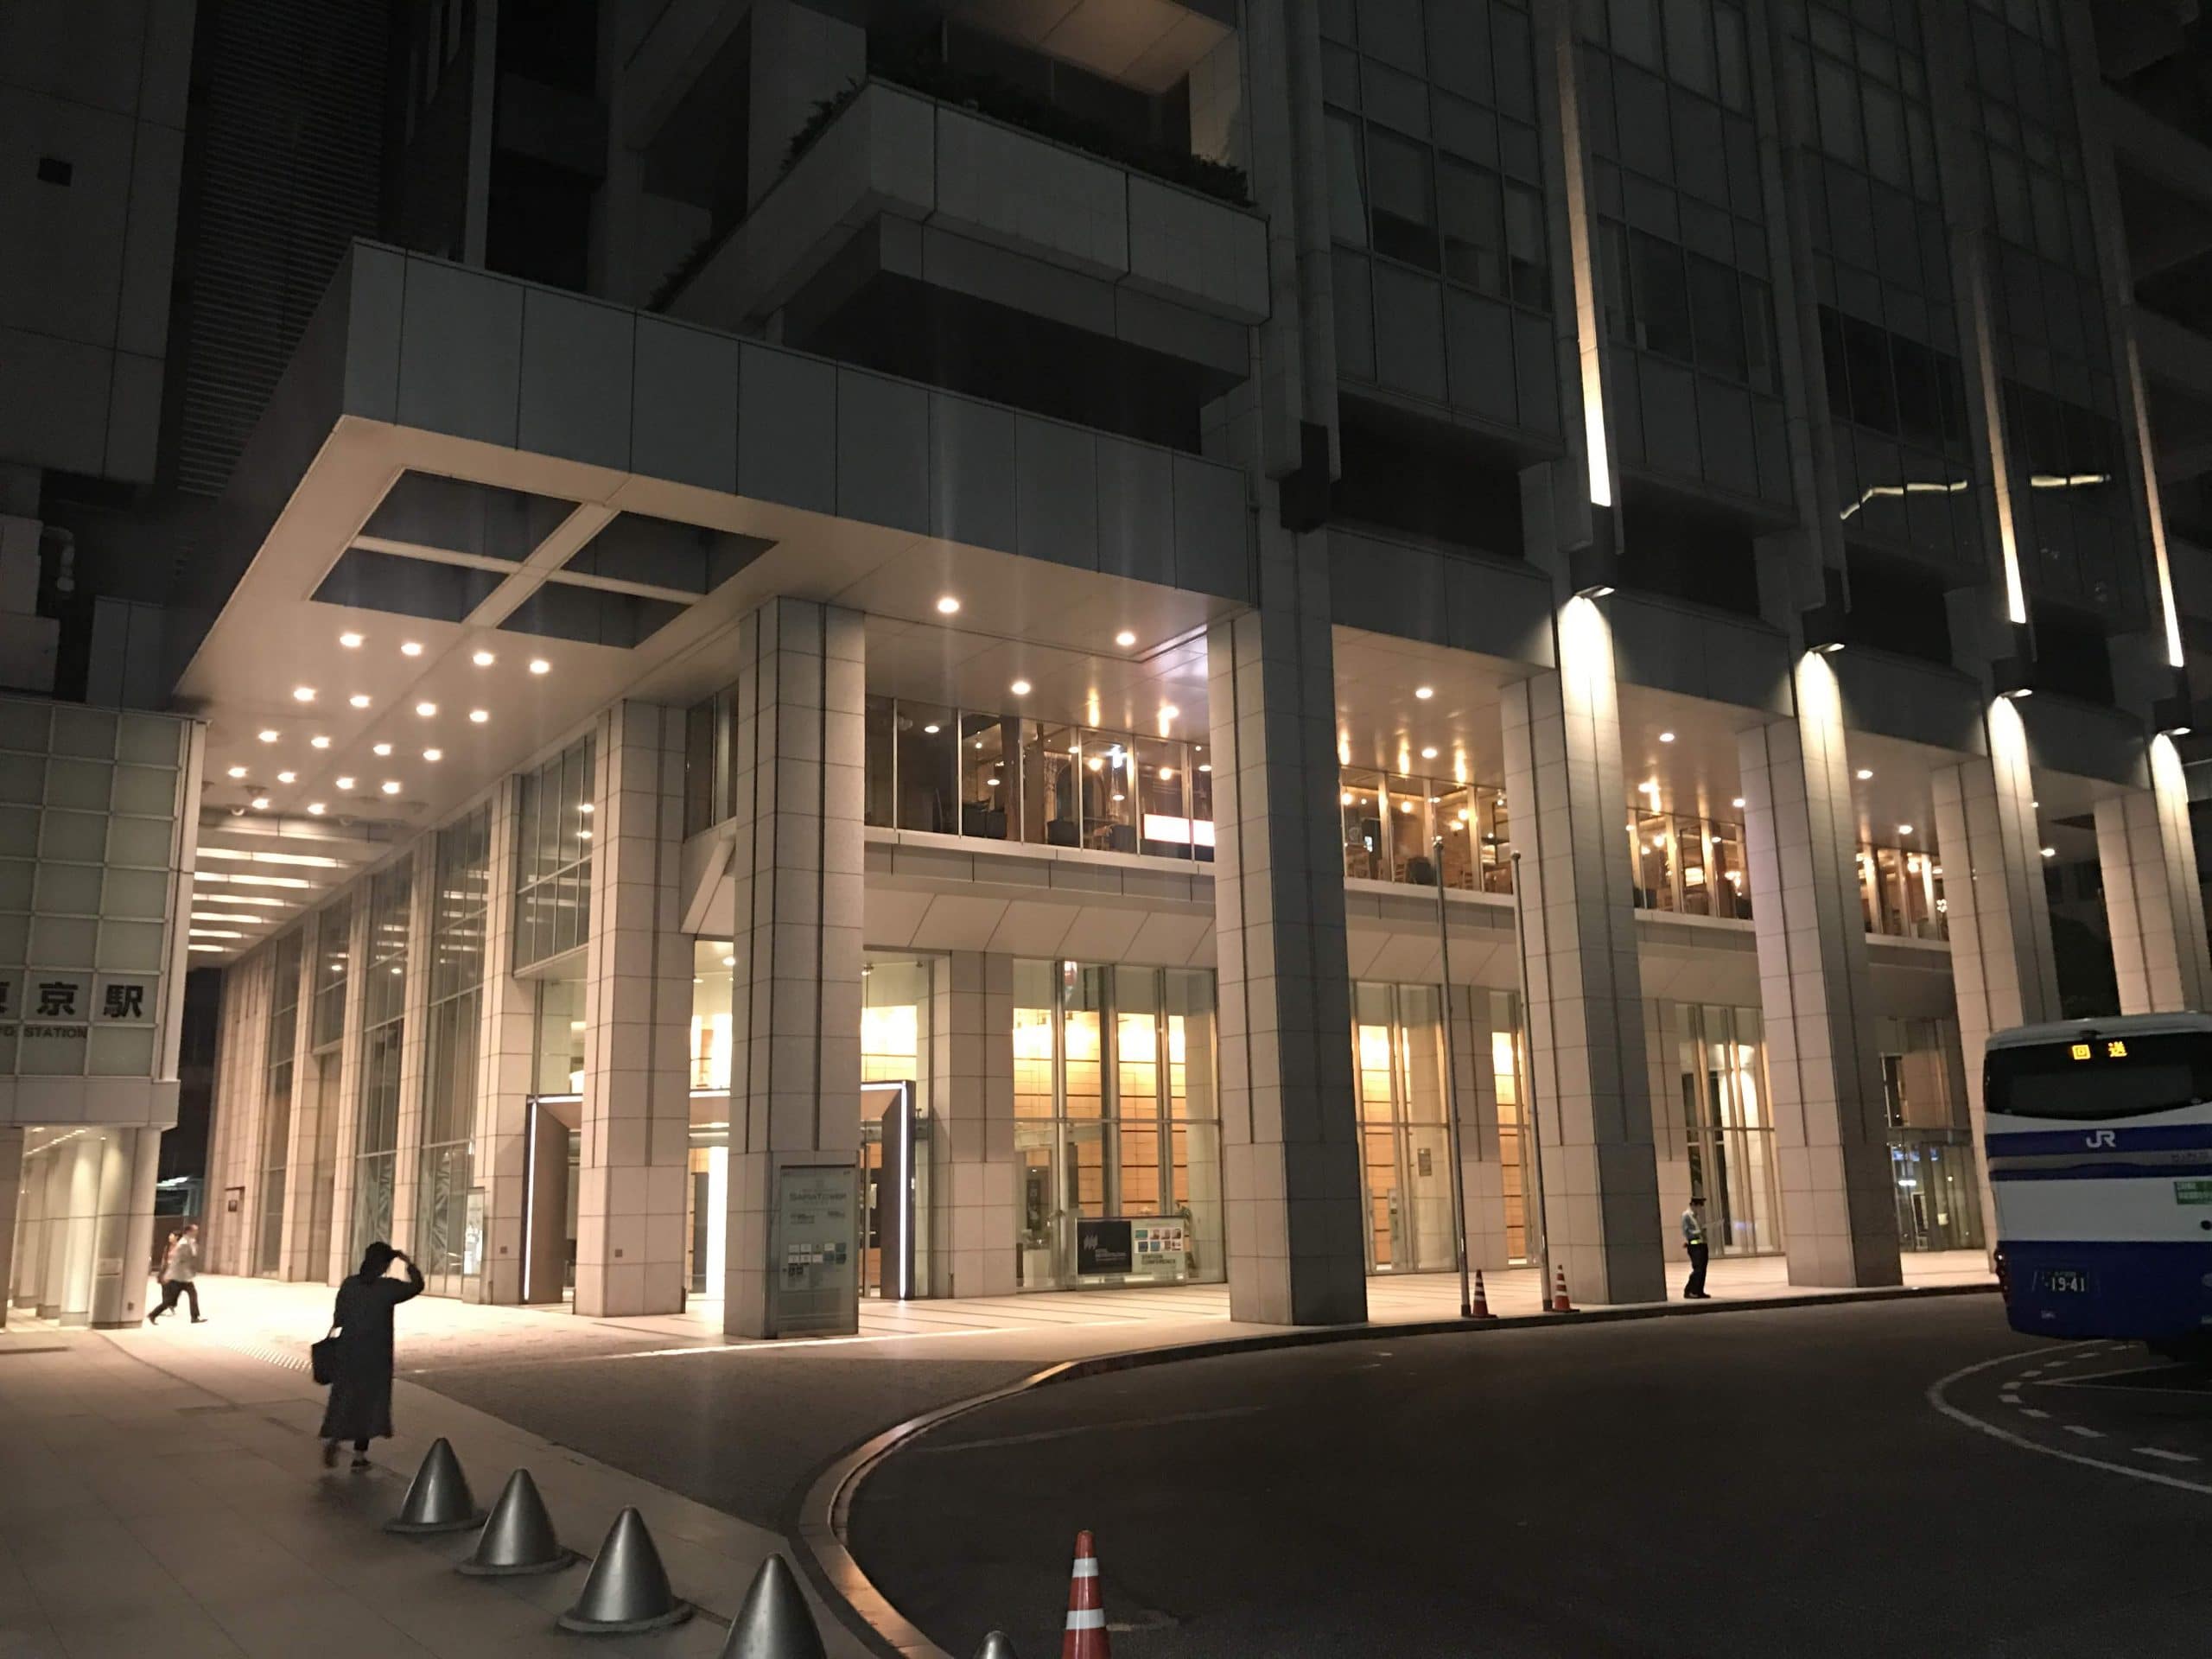 ホテルメトロポリタン東京丸の内 | オイルマッサージ、オイルリンパマッサージなら、東京の出張マッサージ、出張メンズエステのグリーンヒル